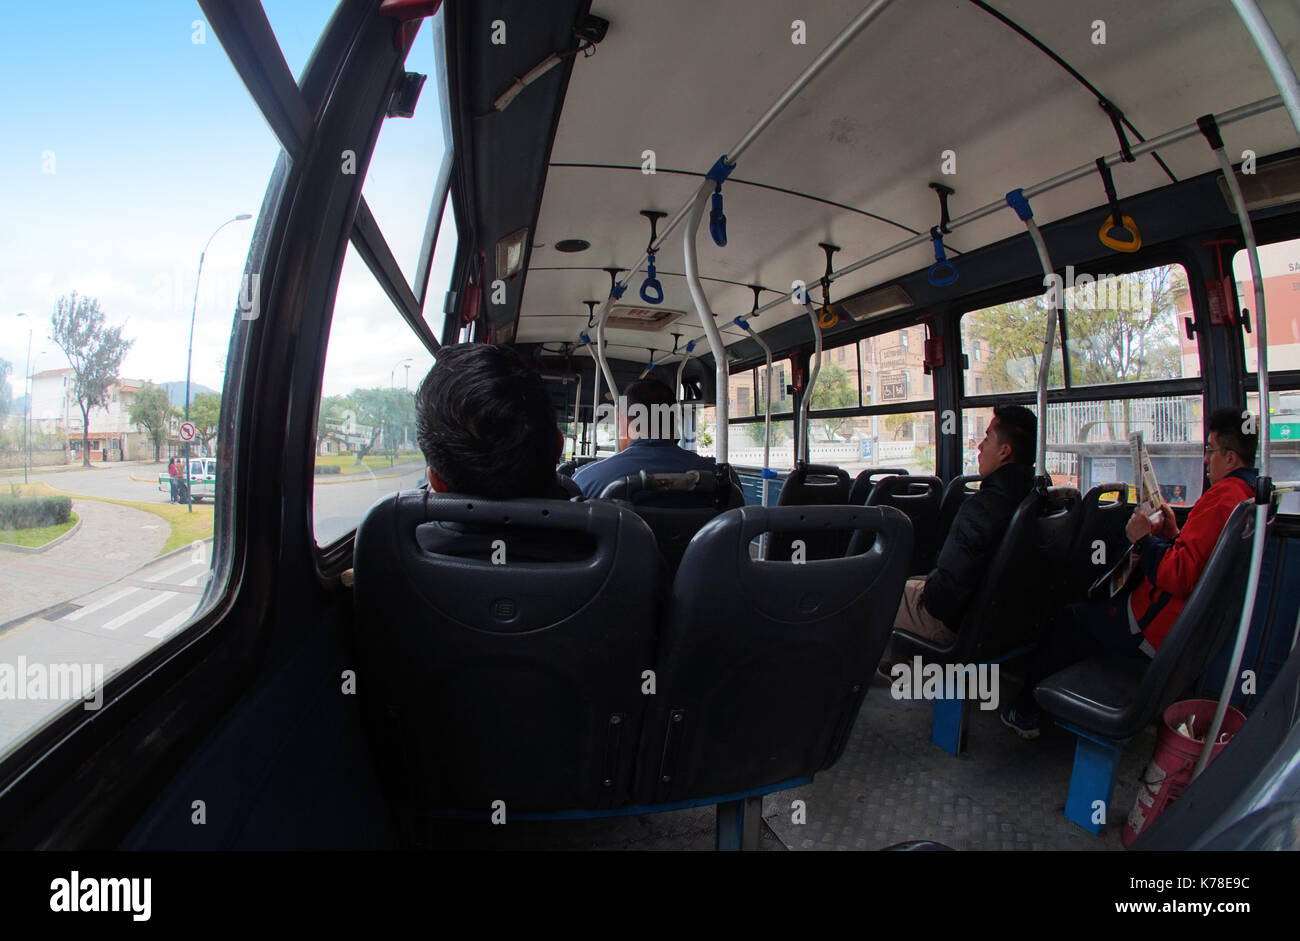 Personnes assises dans un bus de transport en commun dans la ville de Cuenca. Grand angle Banque D'Images